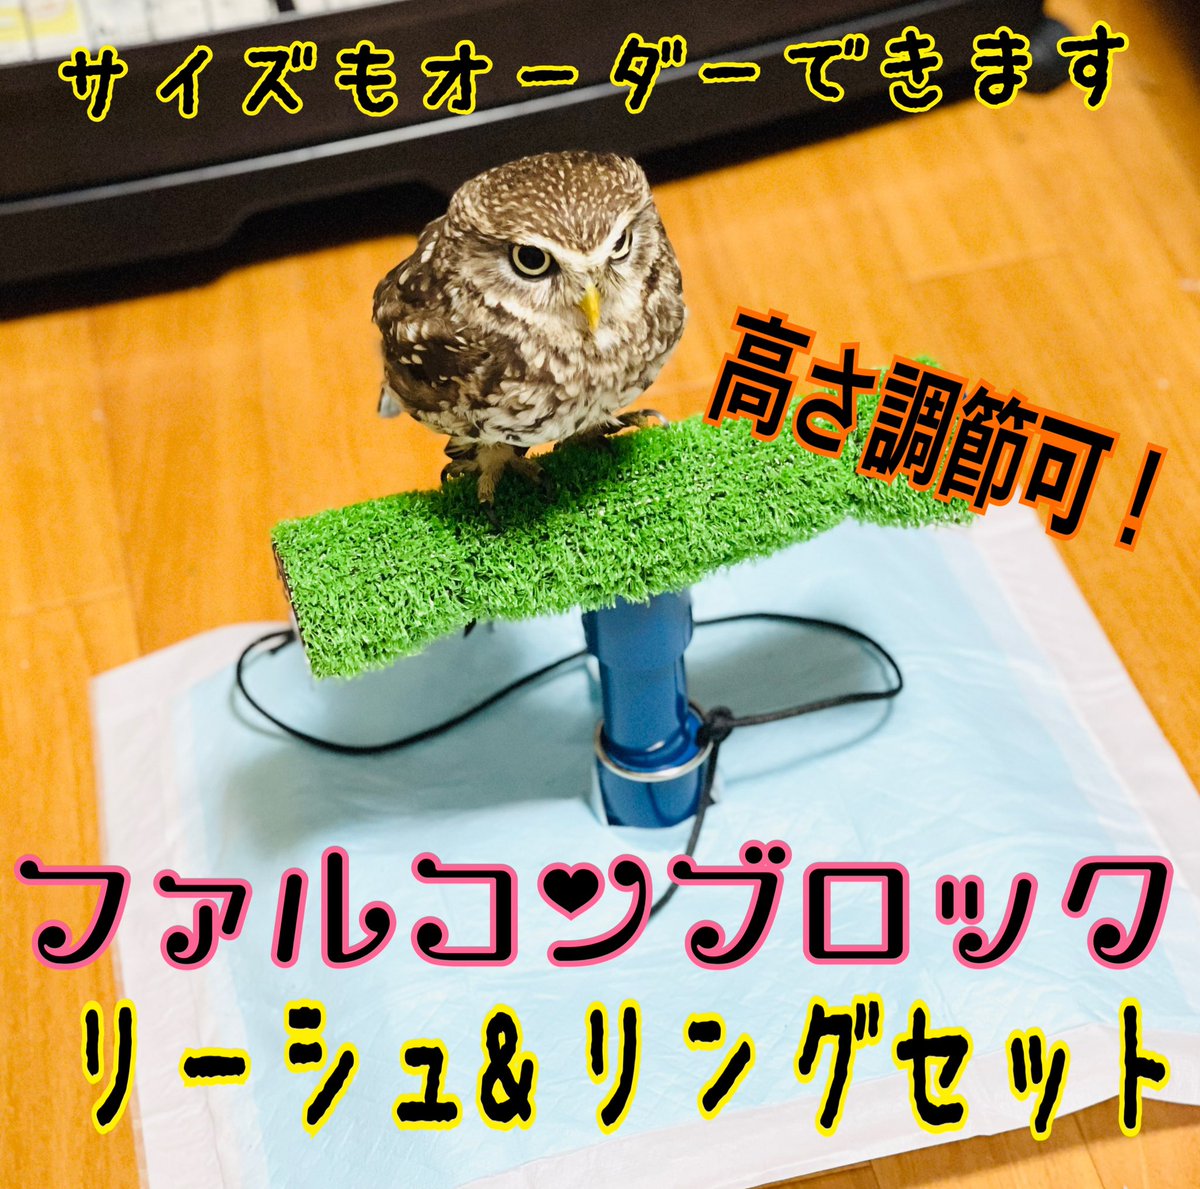 日本最級 猛禽類 一体型 ボウパーチ 小型用〜中型用 ふくろう blog.e-riverstyle.com